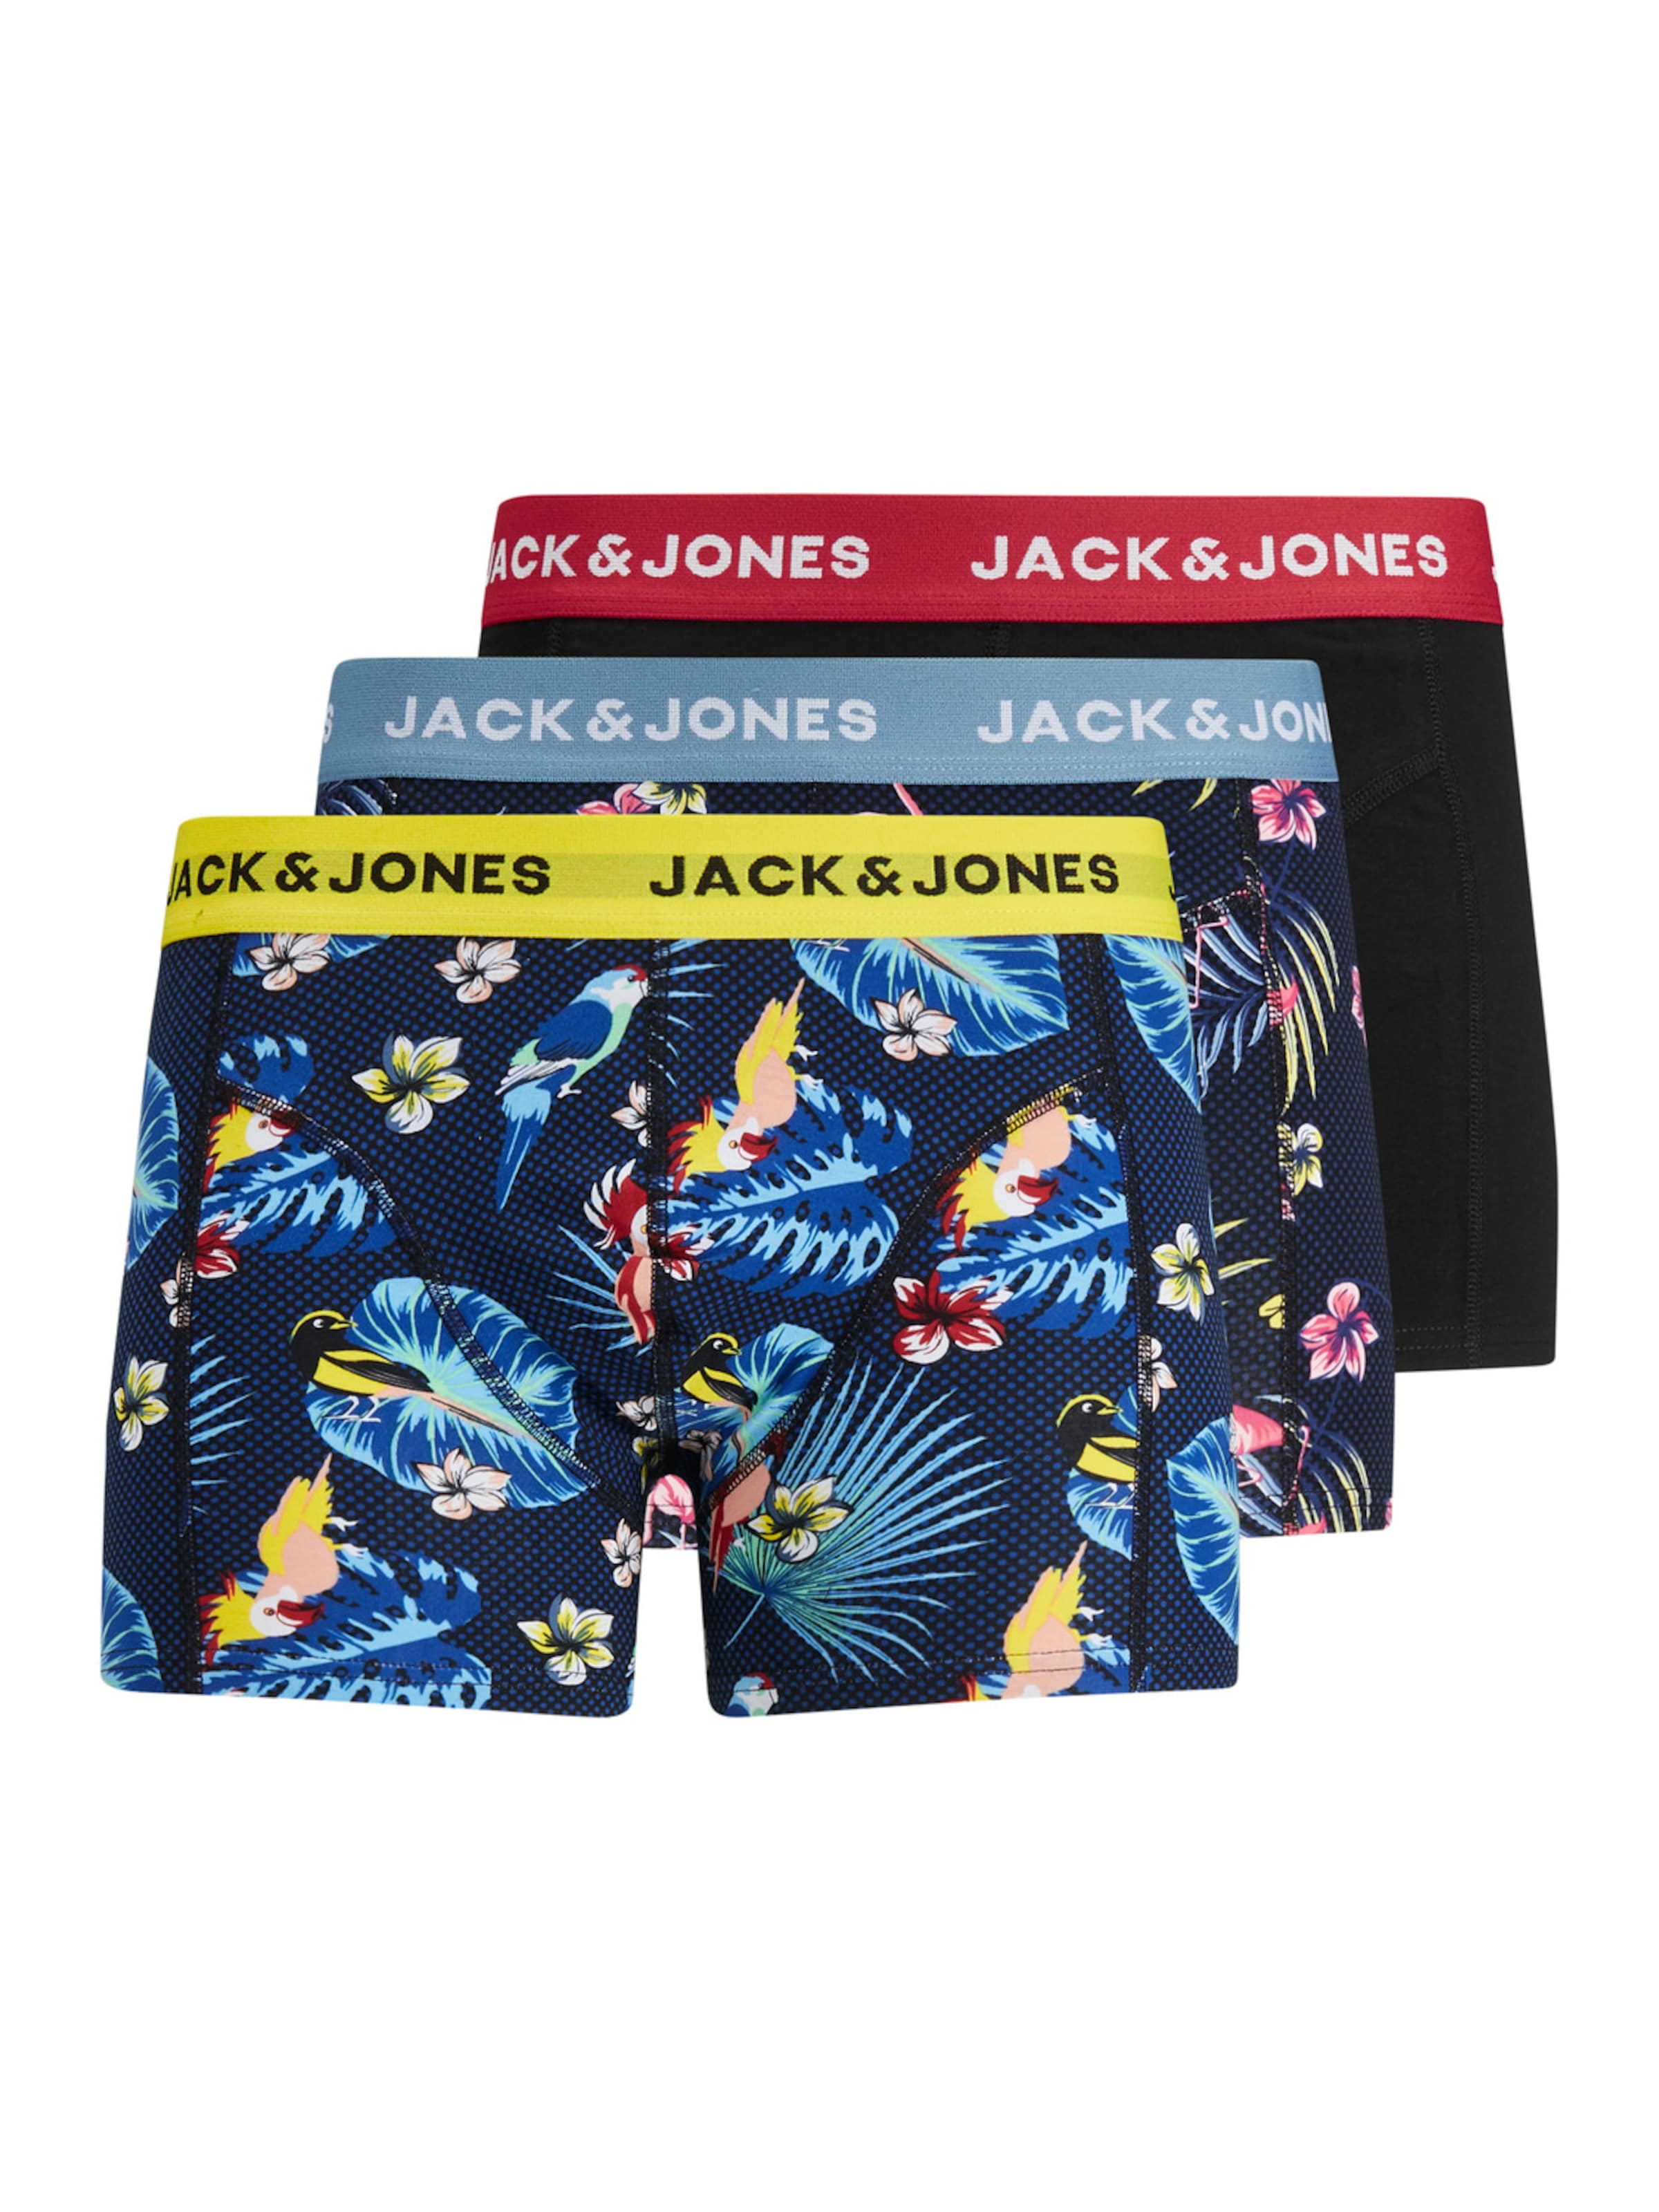 Jack & Jones Boxers S Bleu